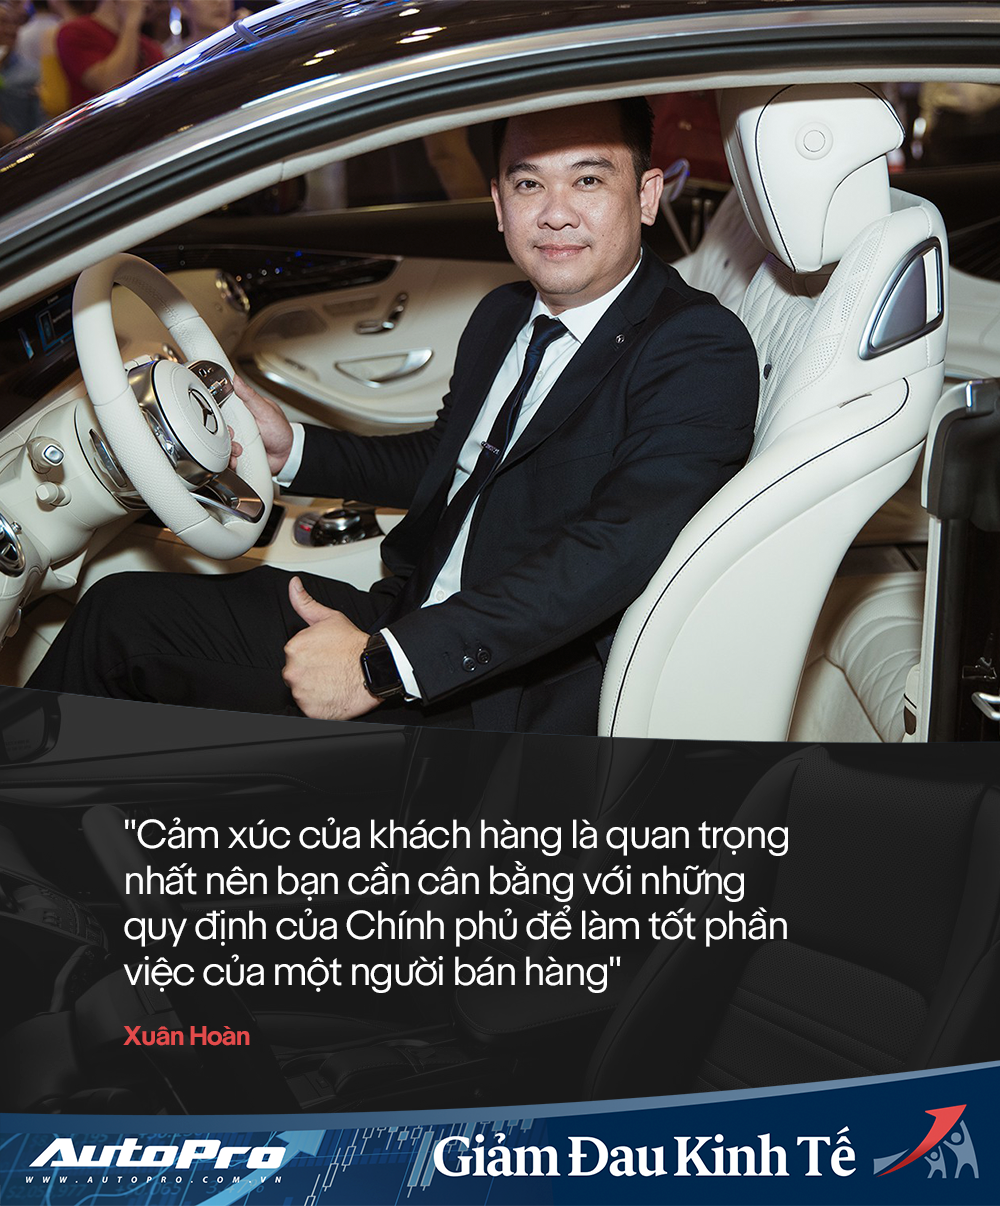 Bộ đôi salesman xe sang nức tiếng Việt Nam tiết lộ cách bán xế tiền tỷ thời dịch: Chỉ cần chạm đúng cảm xúc của khách hàng - Ảnh 2.